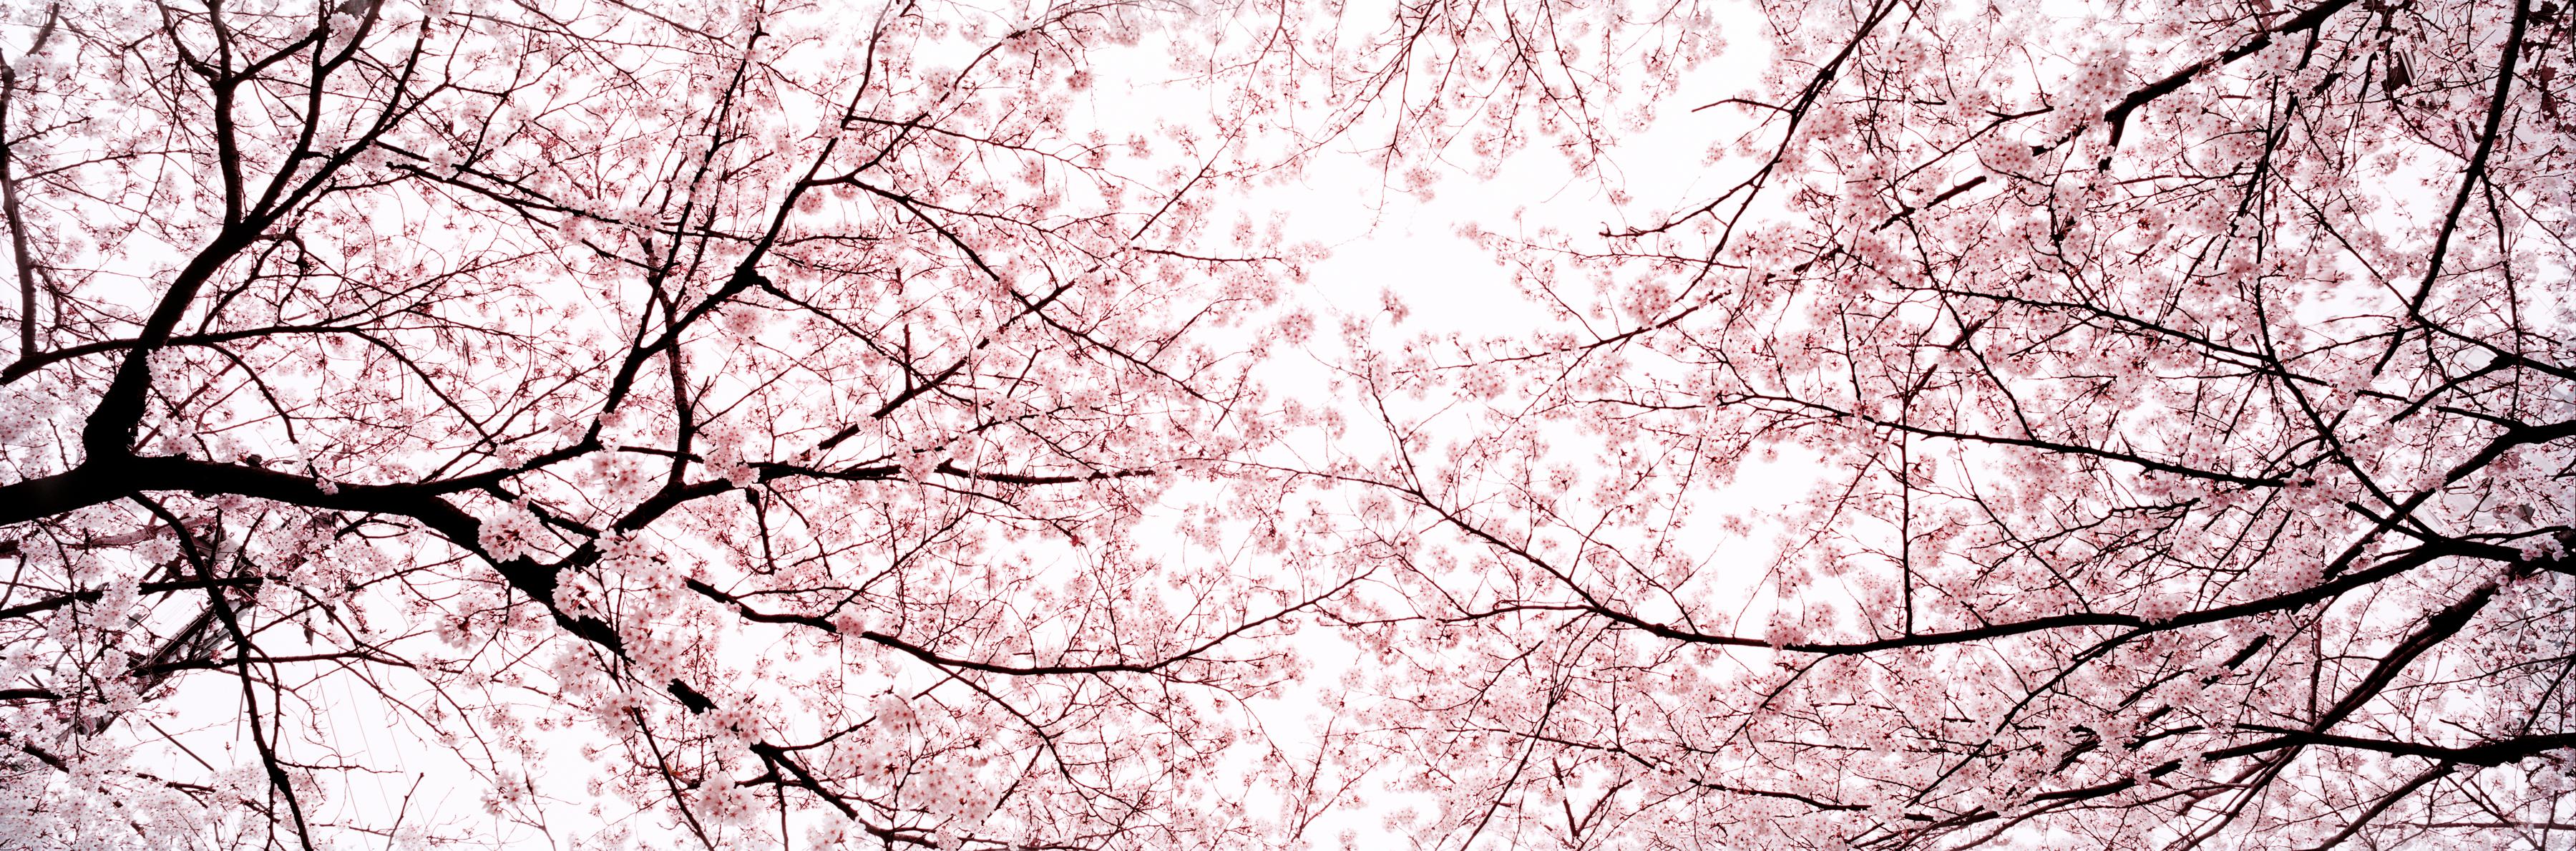 Landscape Photograph Christian Houge - Kauzan 2, Tokyo - de la série Okurimono - Fleur de cerisier rose d'arbre japonais